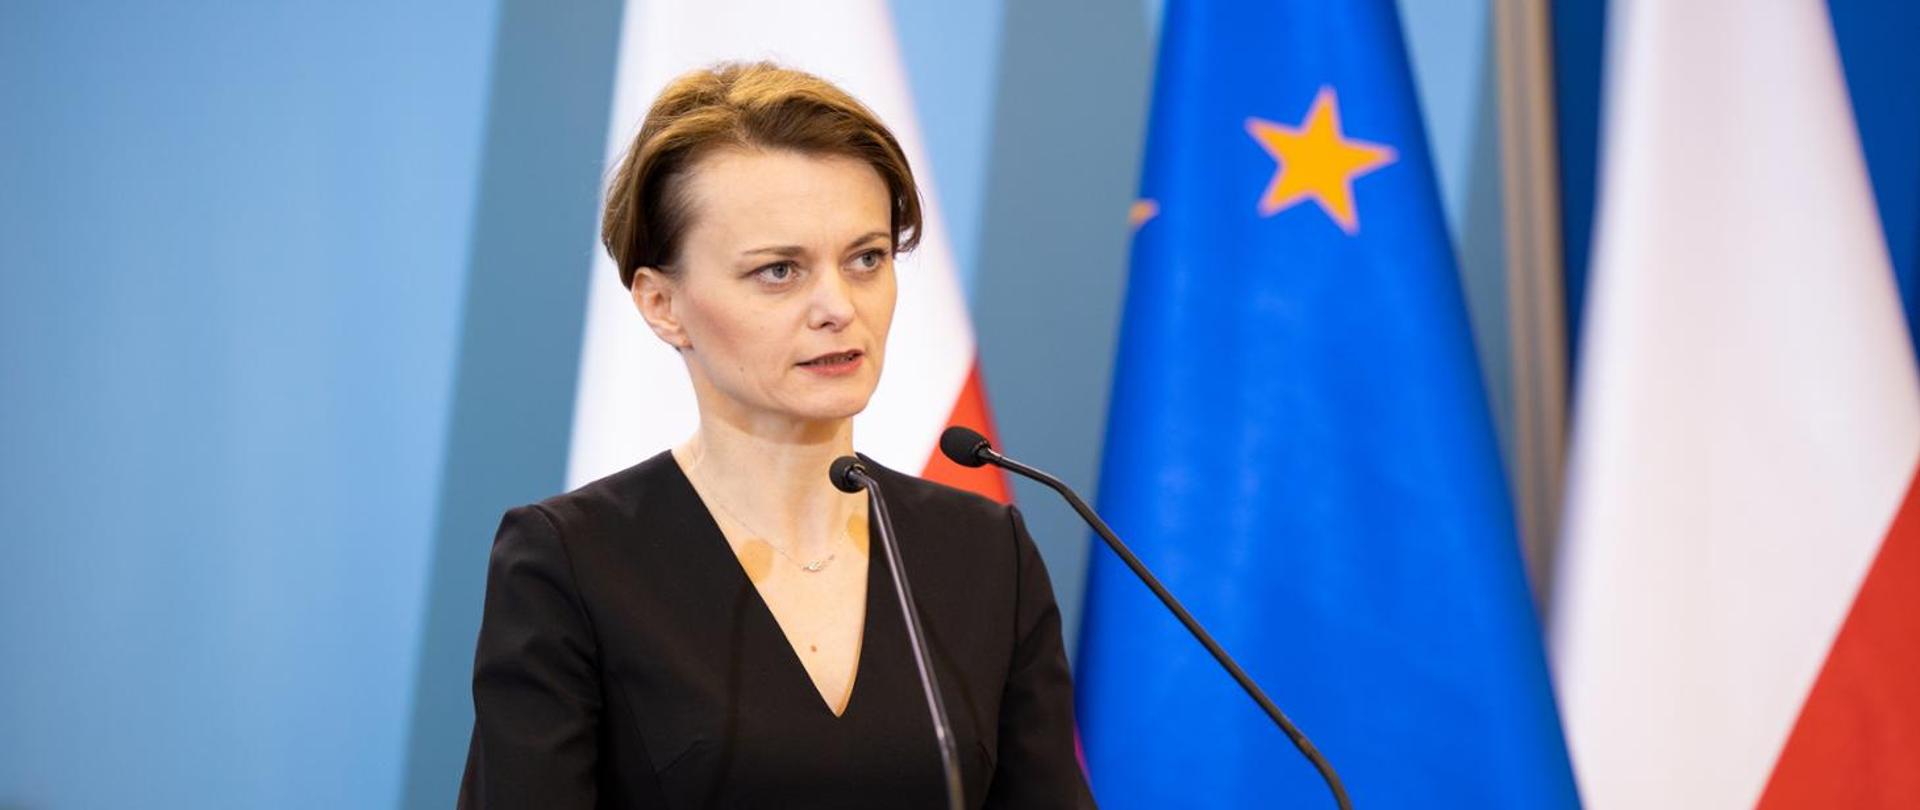 Deputy Prime Minister Jadwiga Emilewicz